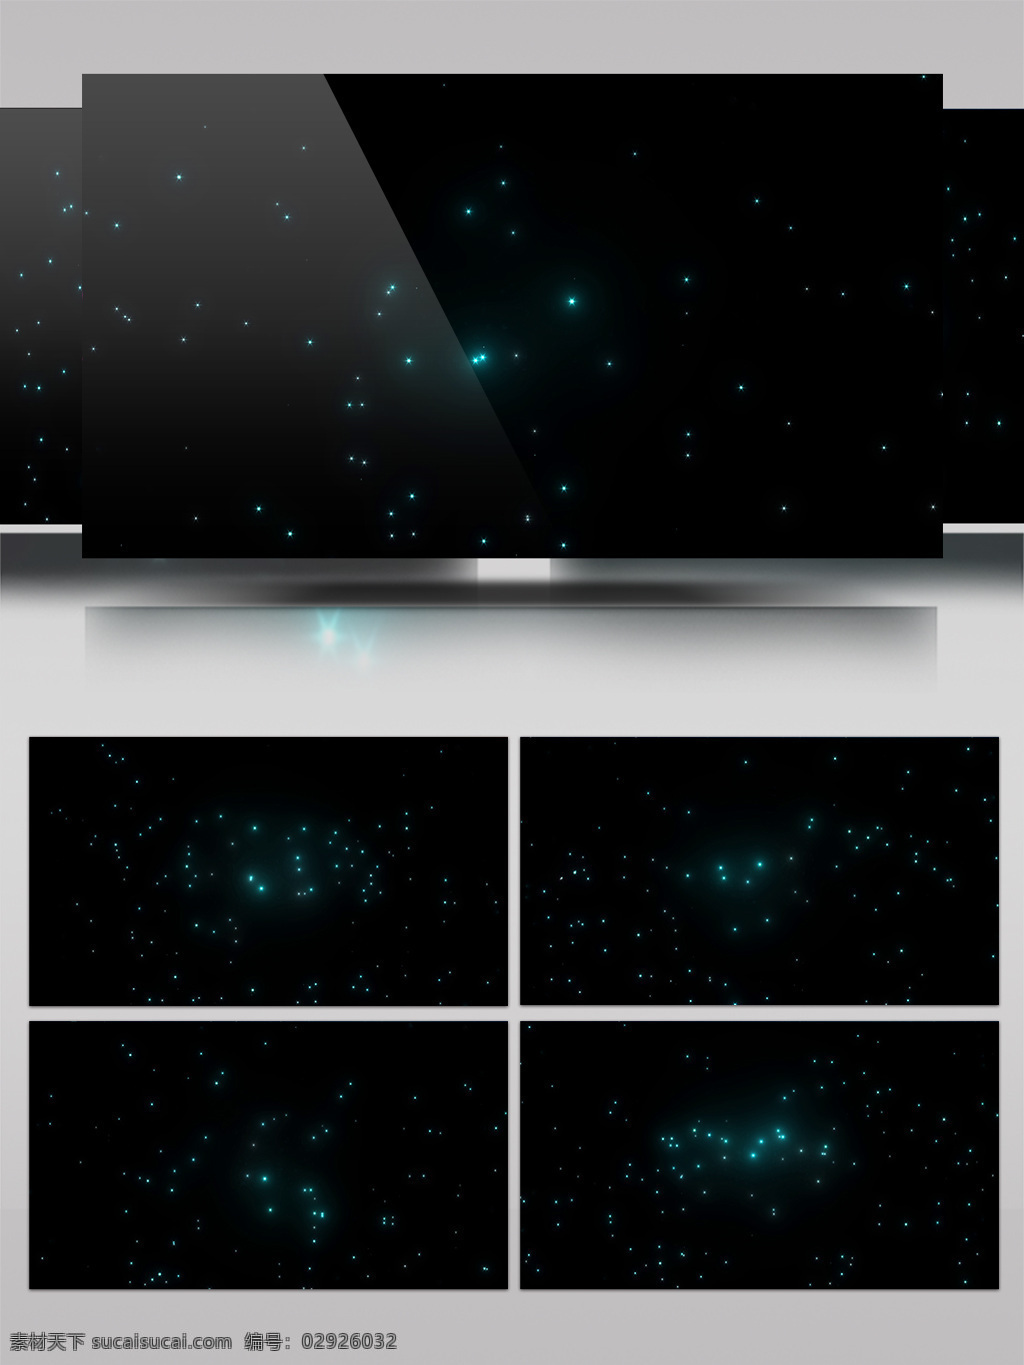 蓝色 星系 神秘 浩瀚 宇宙 粒子 背景 视频 3d led 表演 穿梭 全息 太空 投影 晚会 舞台 星光